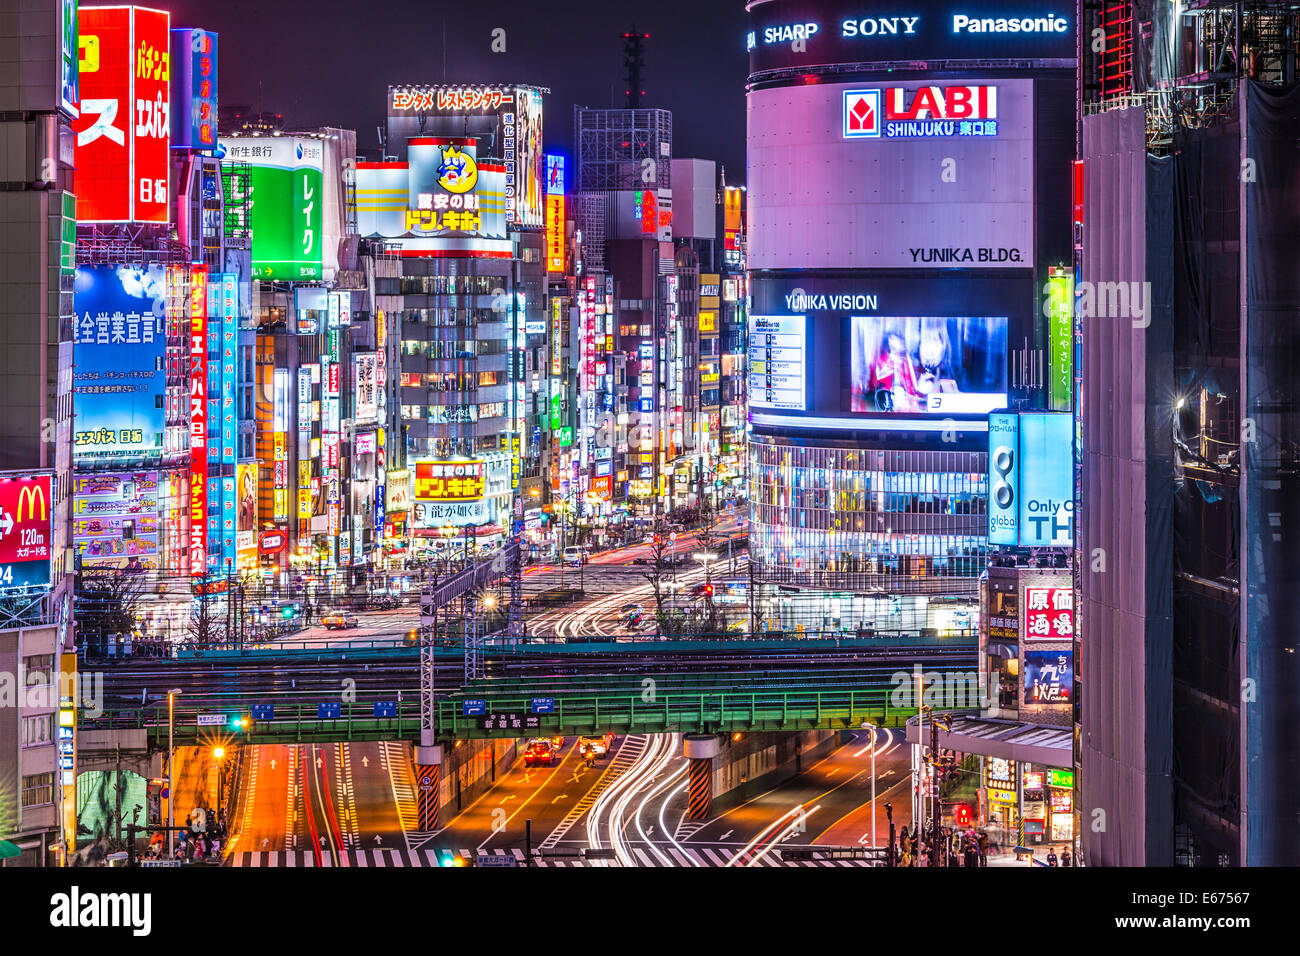 TOKYO, JAPAN - 19. März 2014: Shinjuku Bezirk nachts beleuchtet. Der Bezirk ist bekannt Nacht Lebenszentrum. Stockfoto